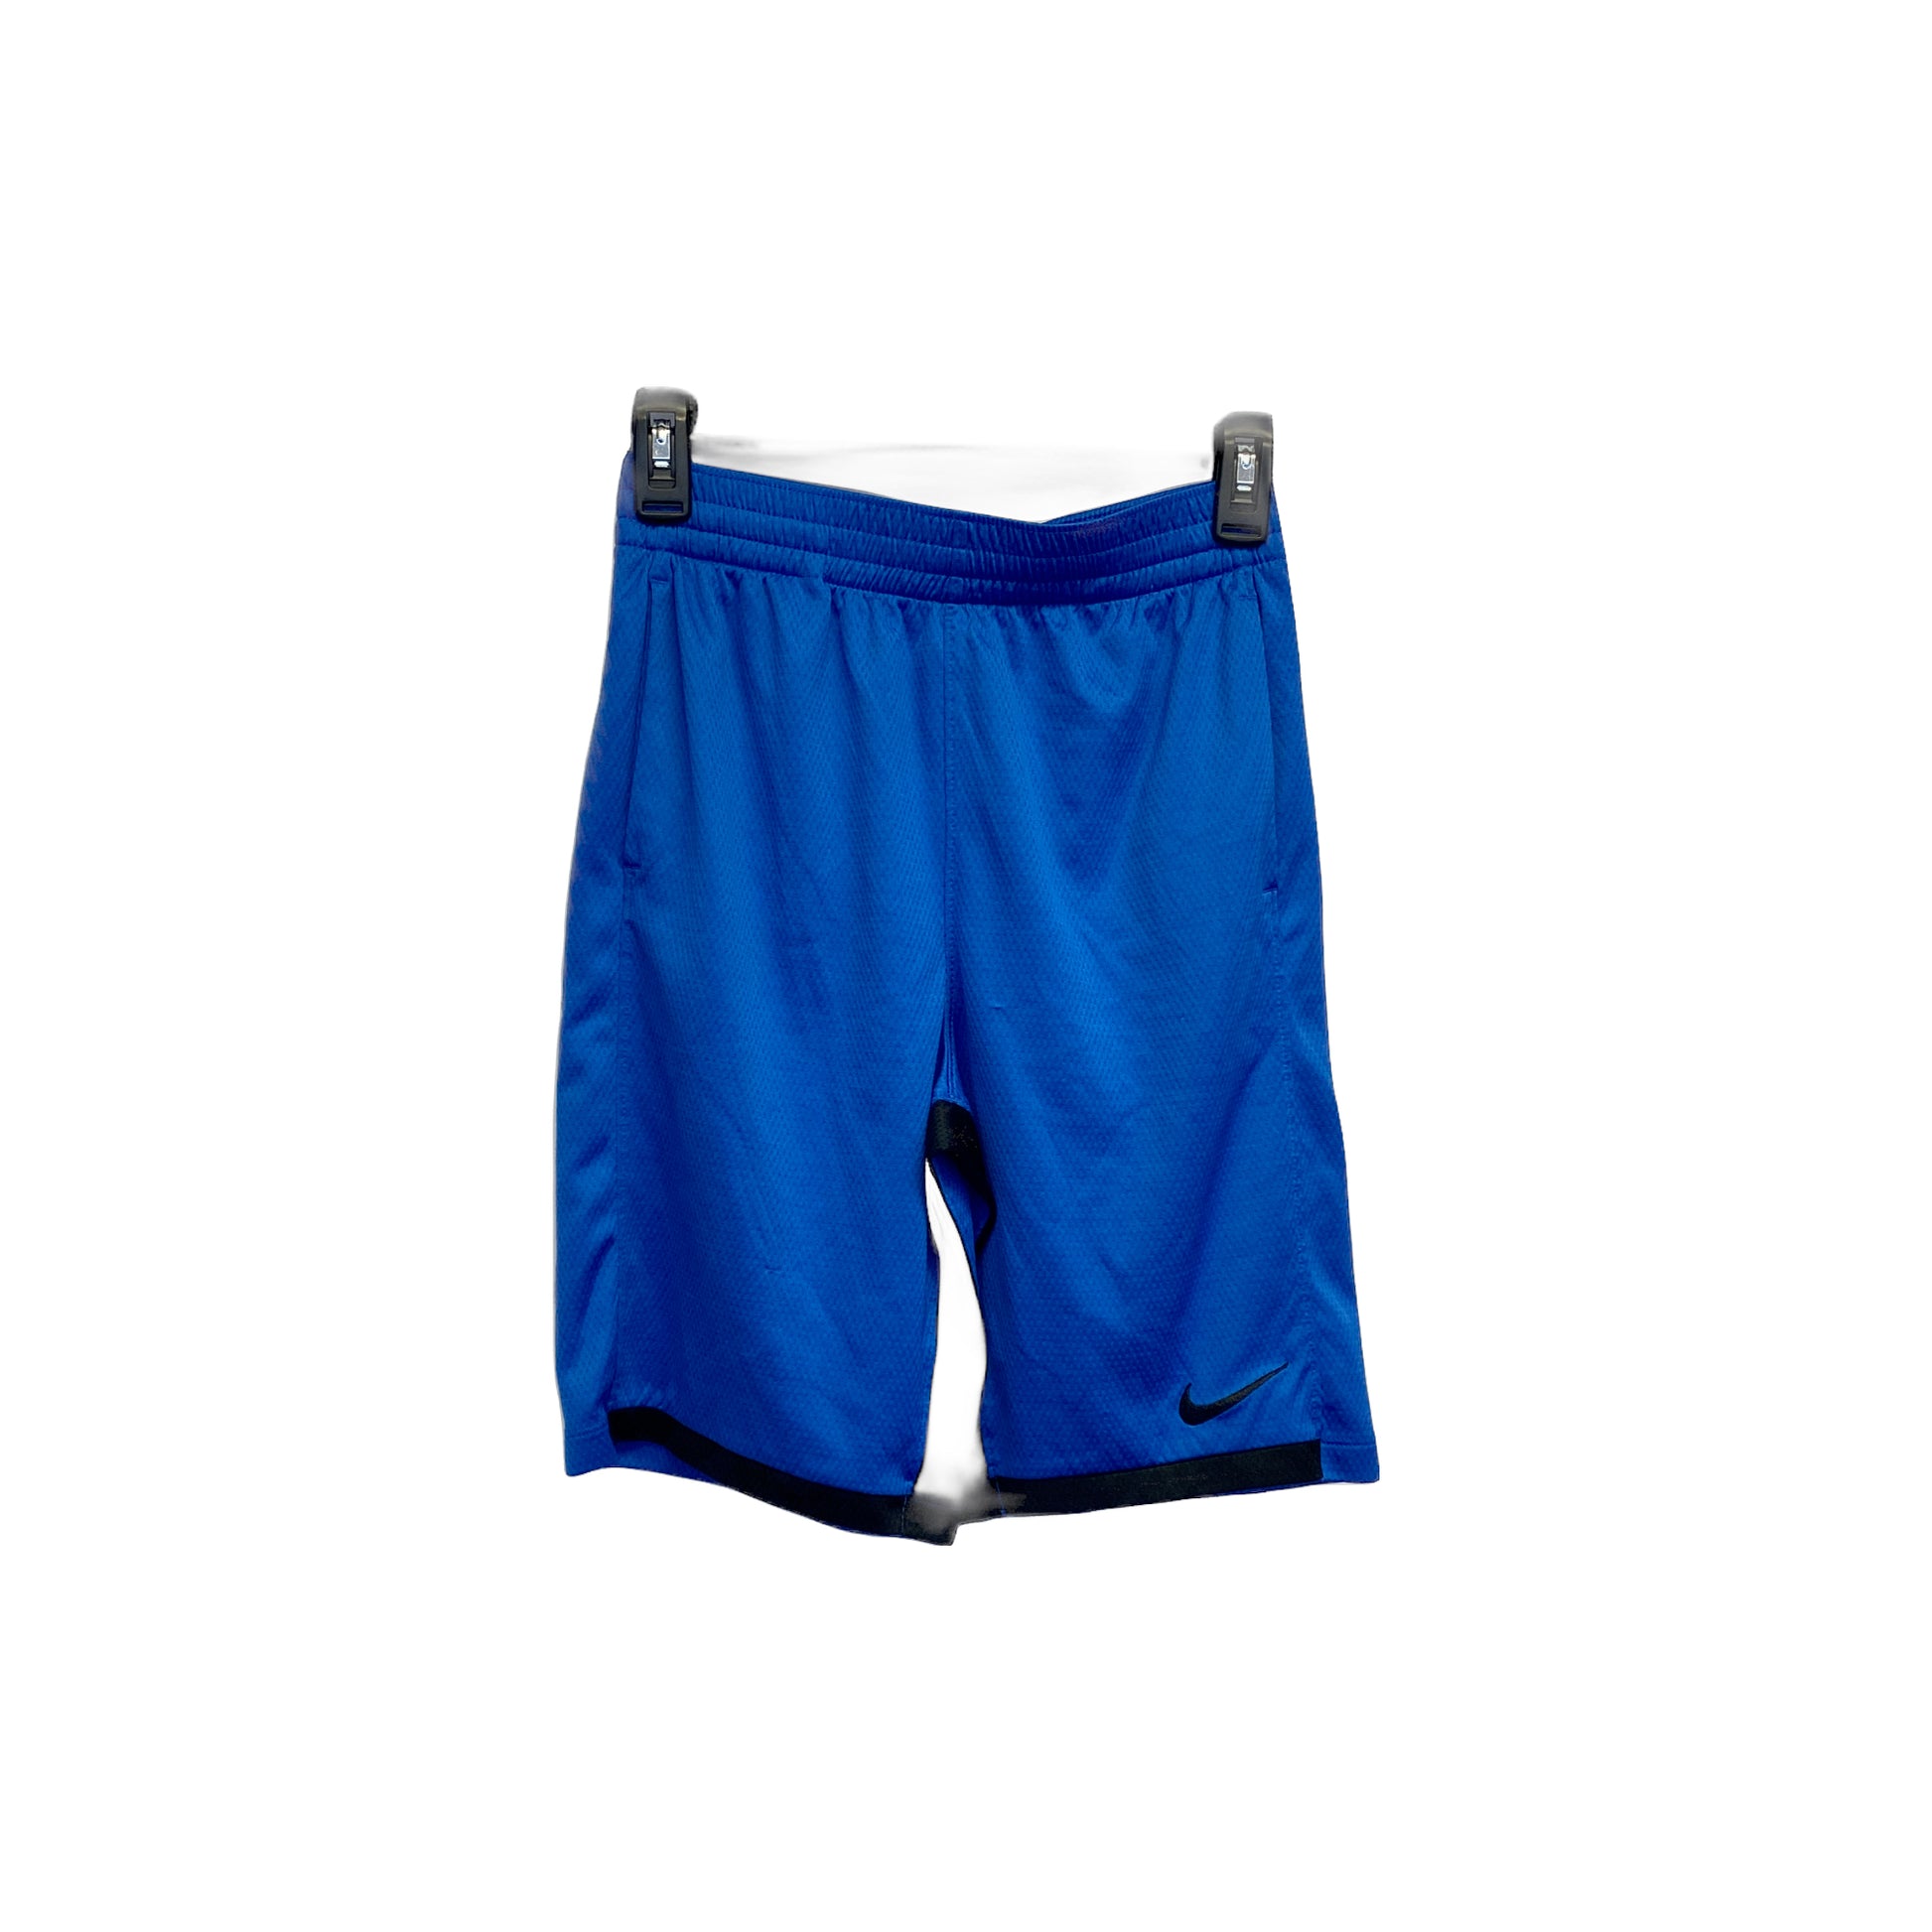 Nike Dri-Fit Shorts - YXL